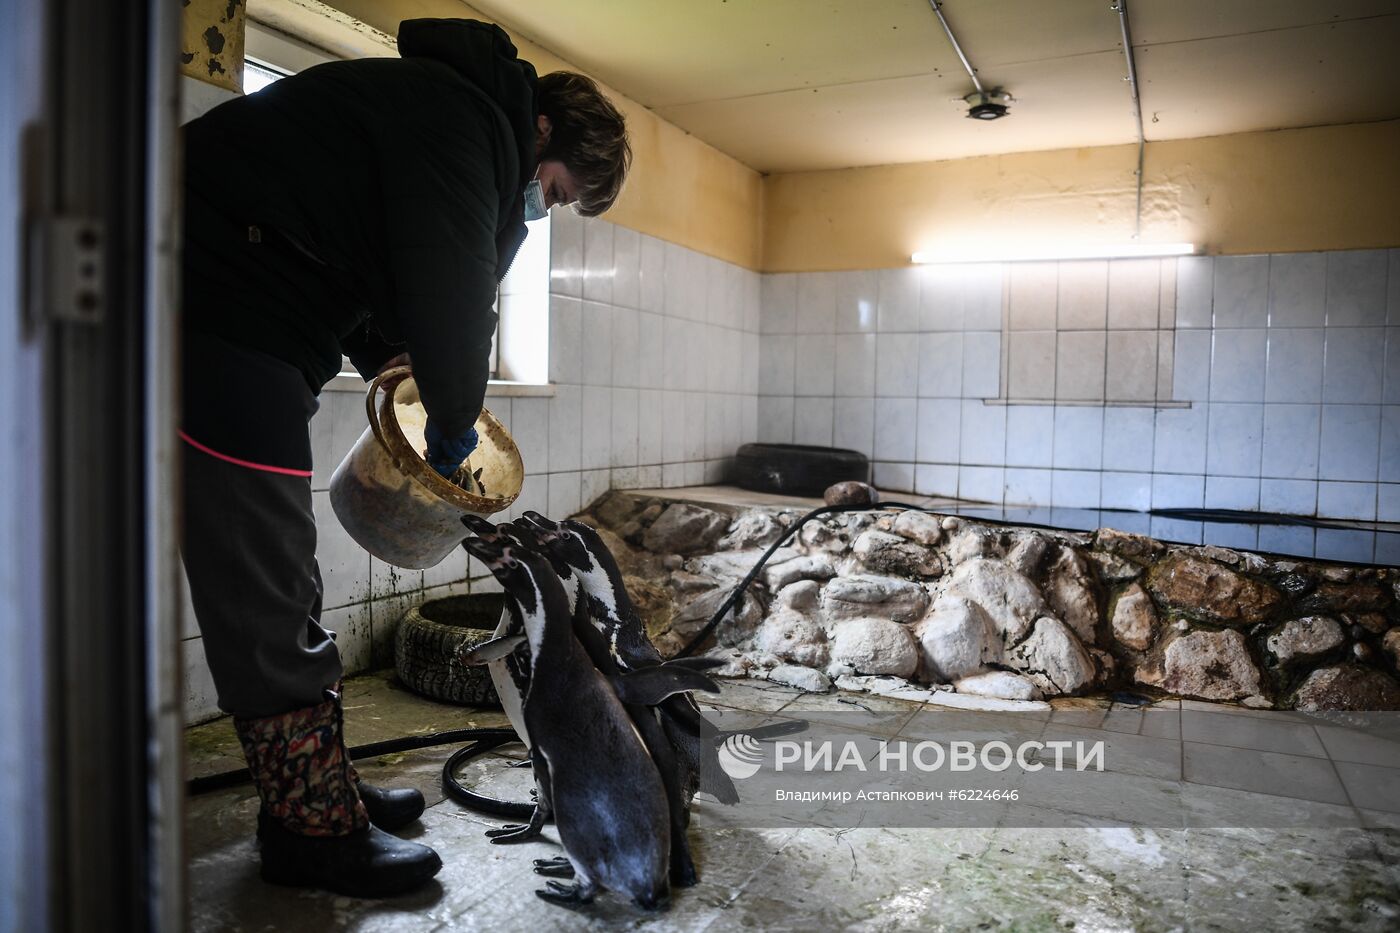 Крупнейший в России парк птиц "Воробьи" попросил о помощи в содержании питомцев